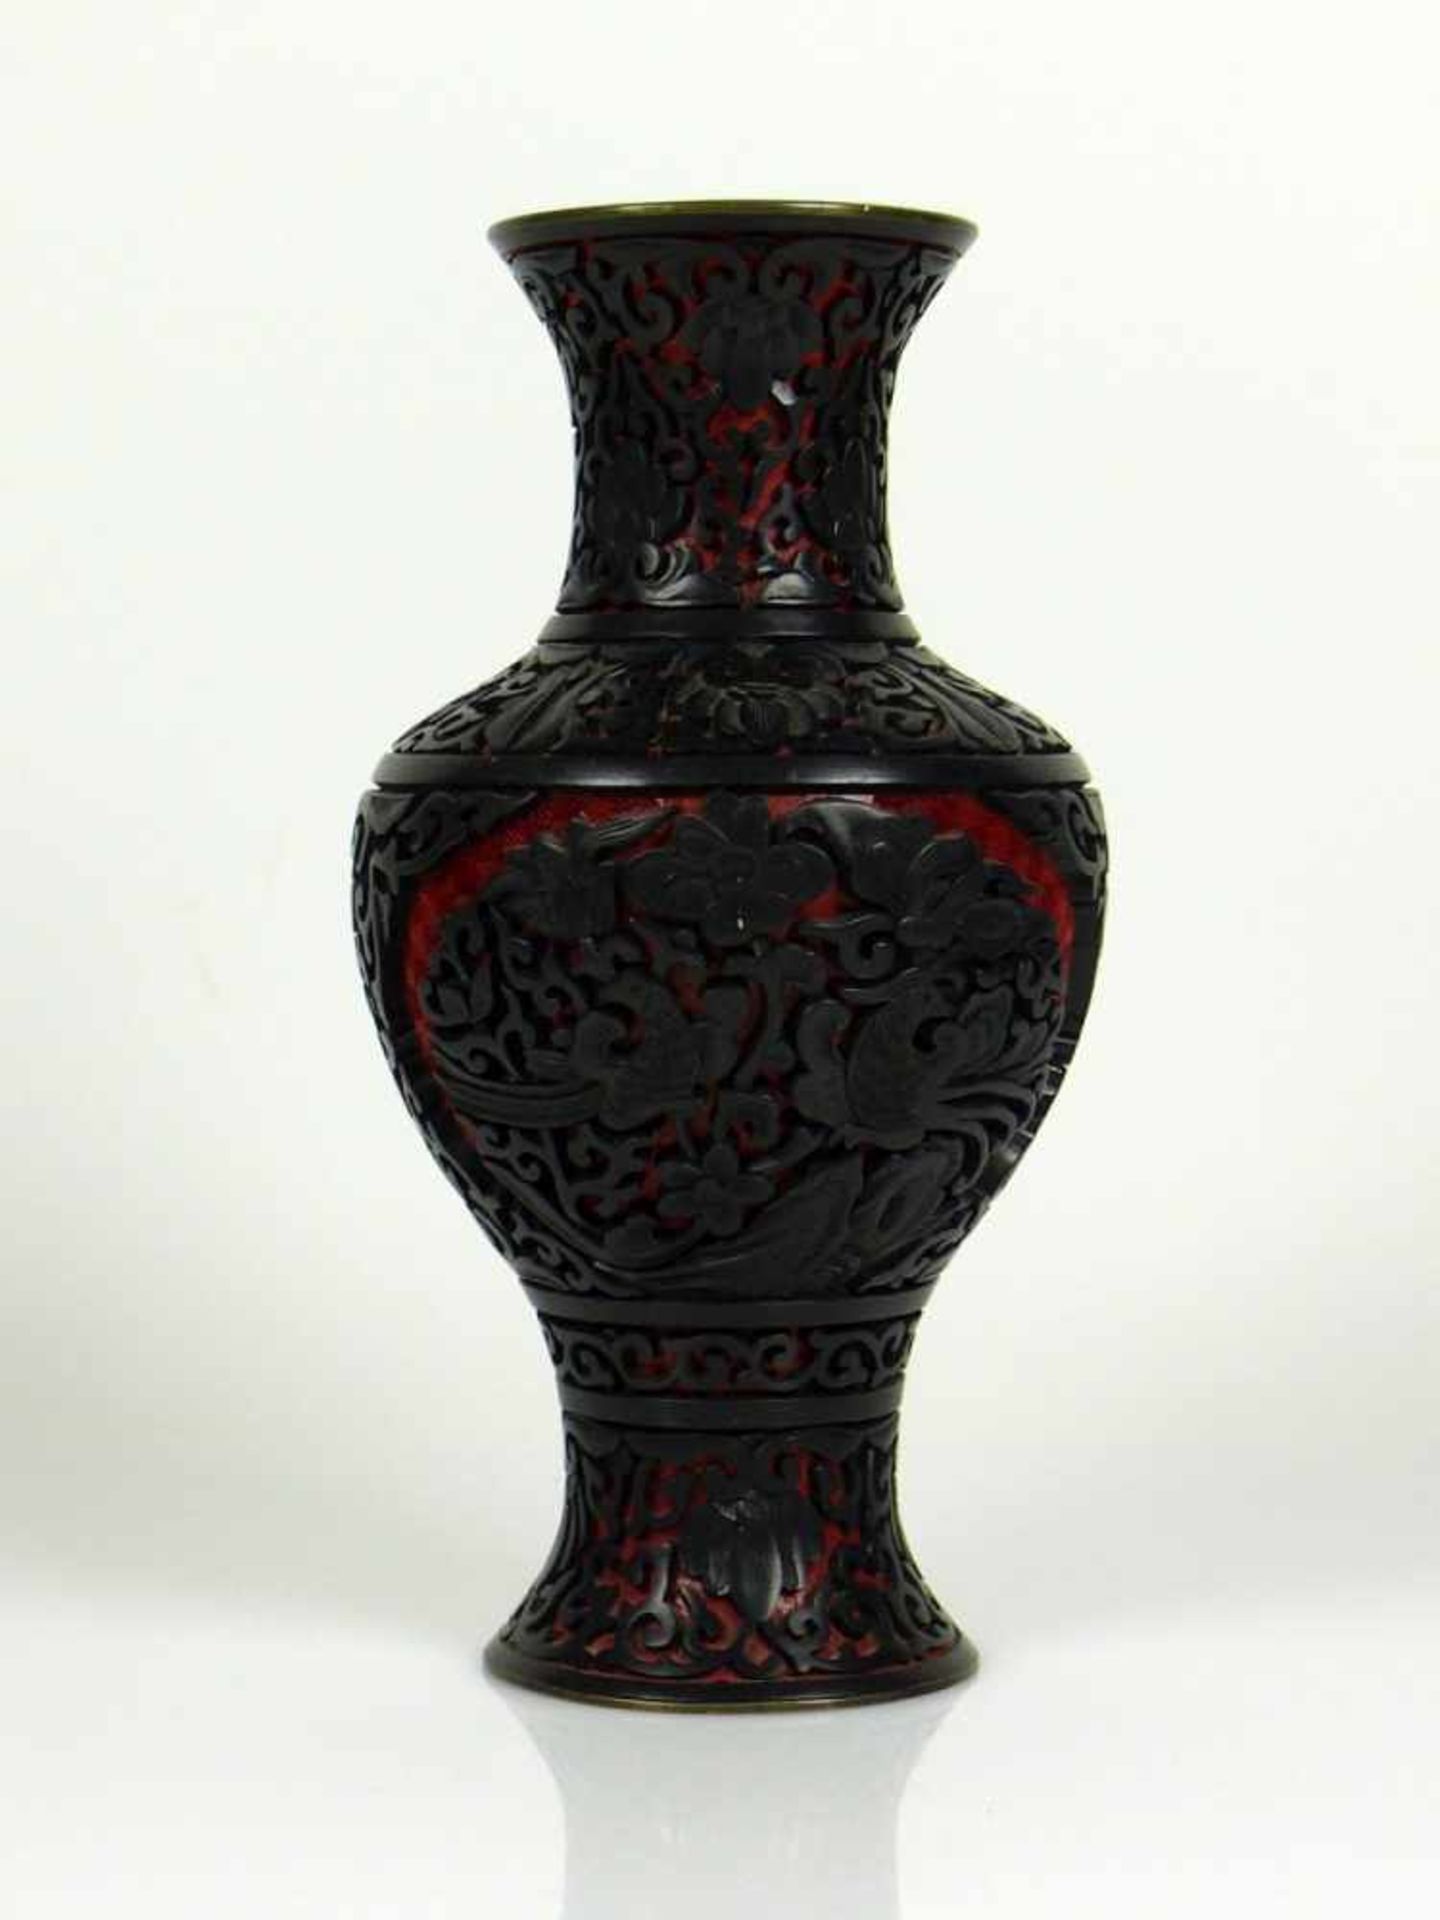 Schwarzlack-Vase mit floralem Dekor und Vögel auf rotem Grund; Vaseninneres blau emailiert;